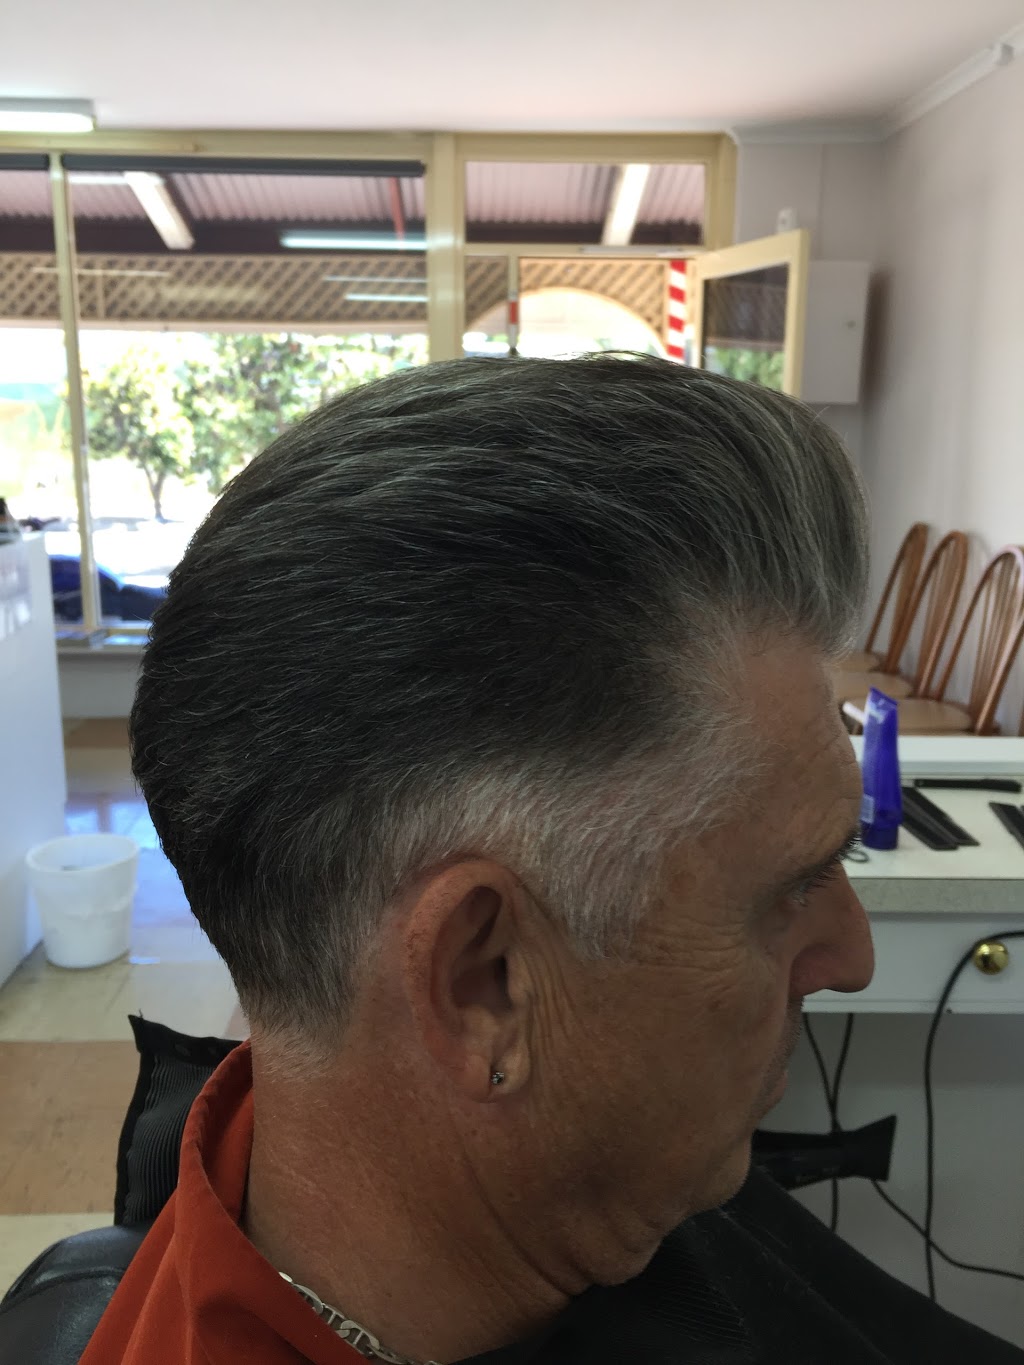 Michaels Beach Road Barbers | hair care | 2/88 Beach Rd, Christies Beach SA 5165, Australia | 0883824569 OR +61 8 8382 4569